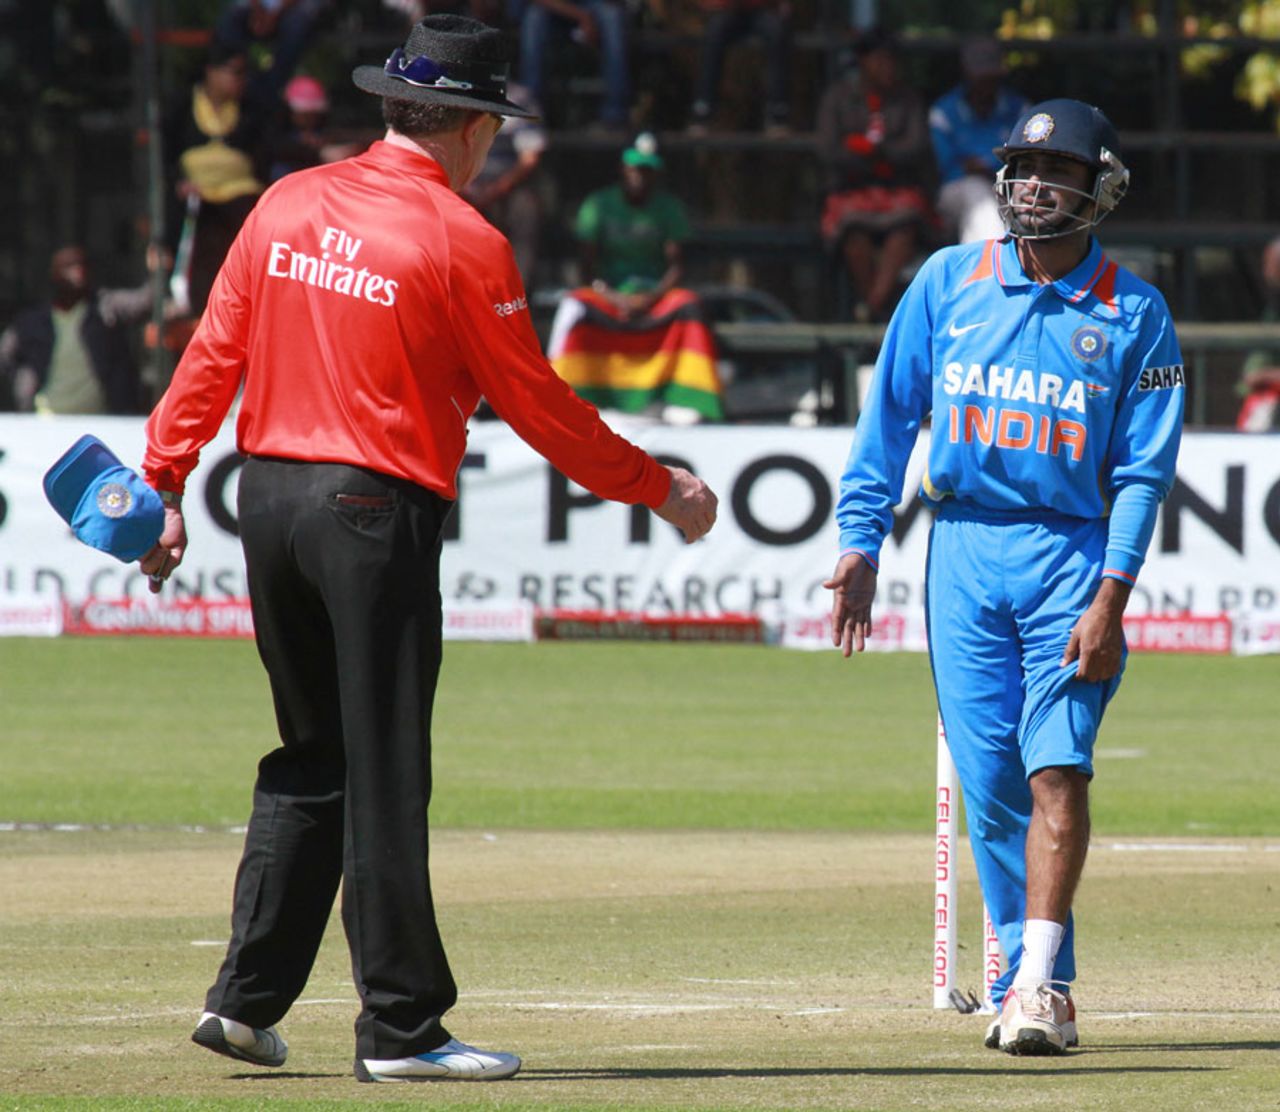 Ambati Rayudu was struck by a drive at silly point, Zimbabwe v India, 3rd ODI, Harare, July 28, 2013